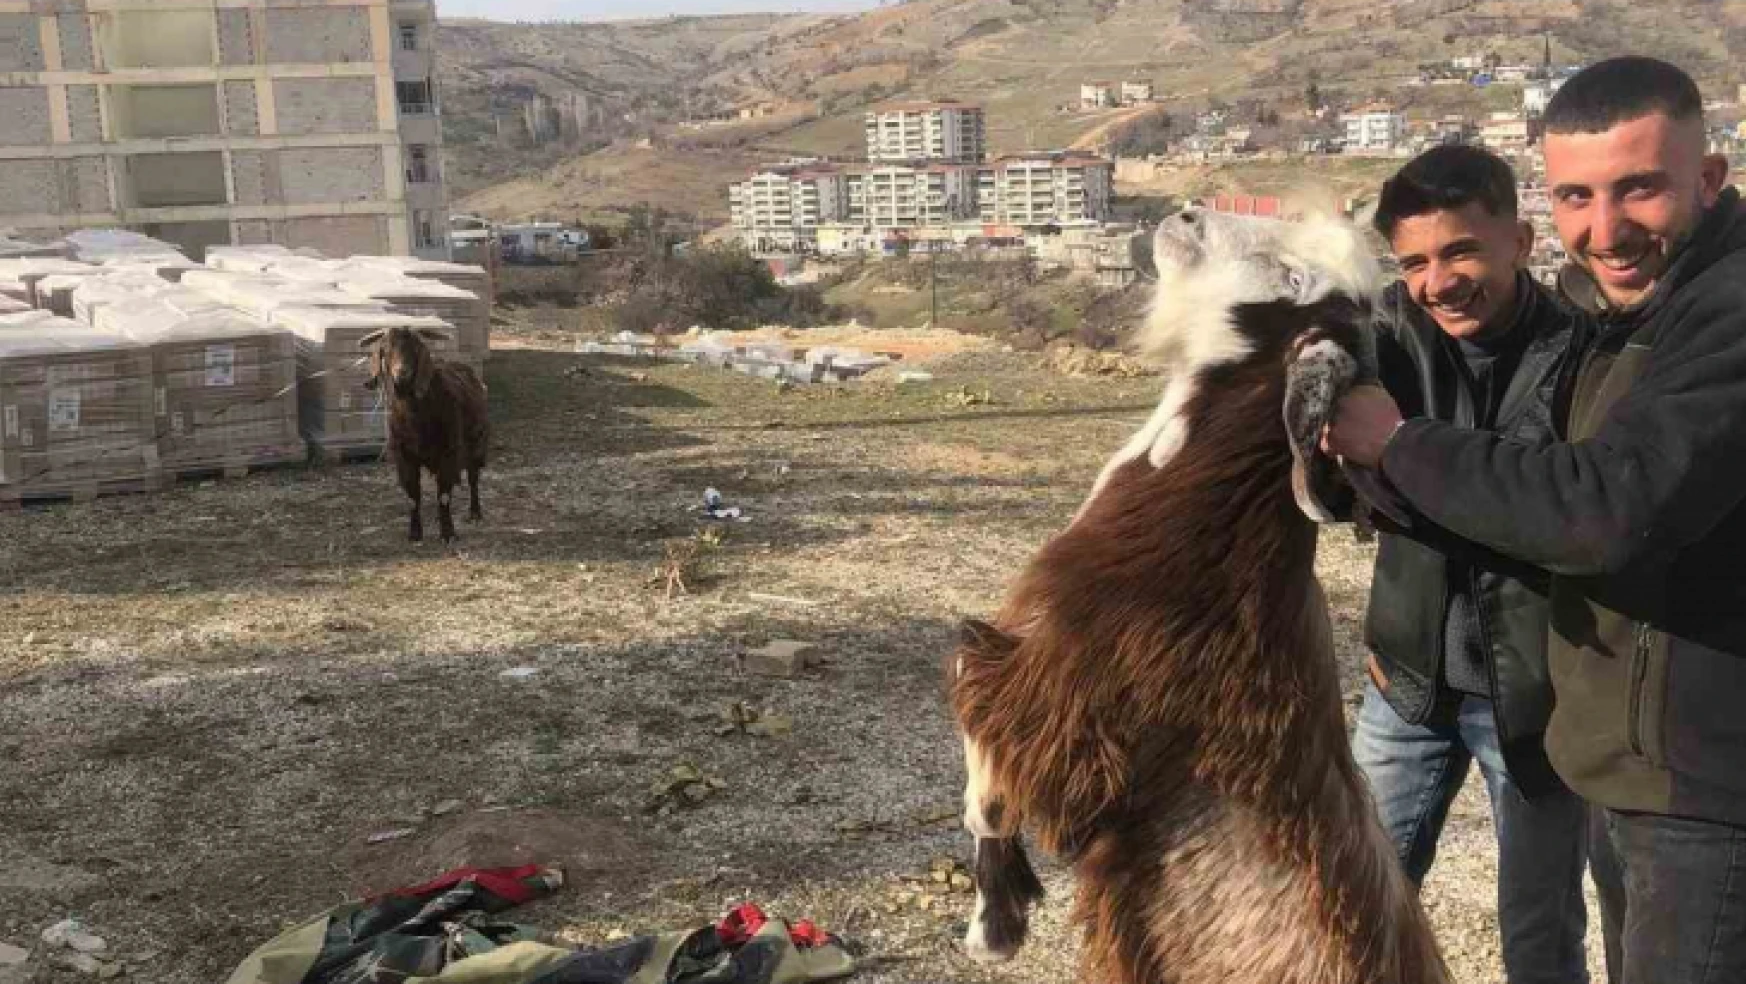 Enkazda kalan iki keçi 21 gün sonra kurtarıldı